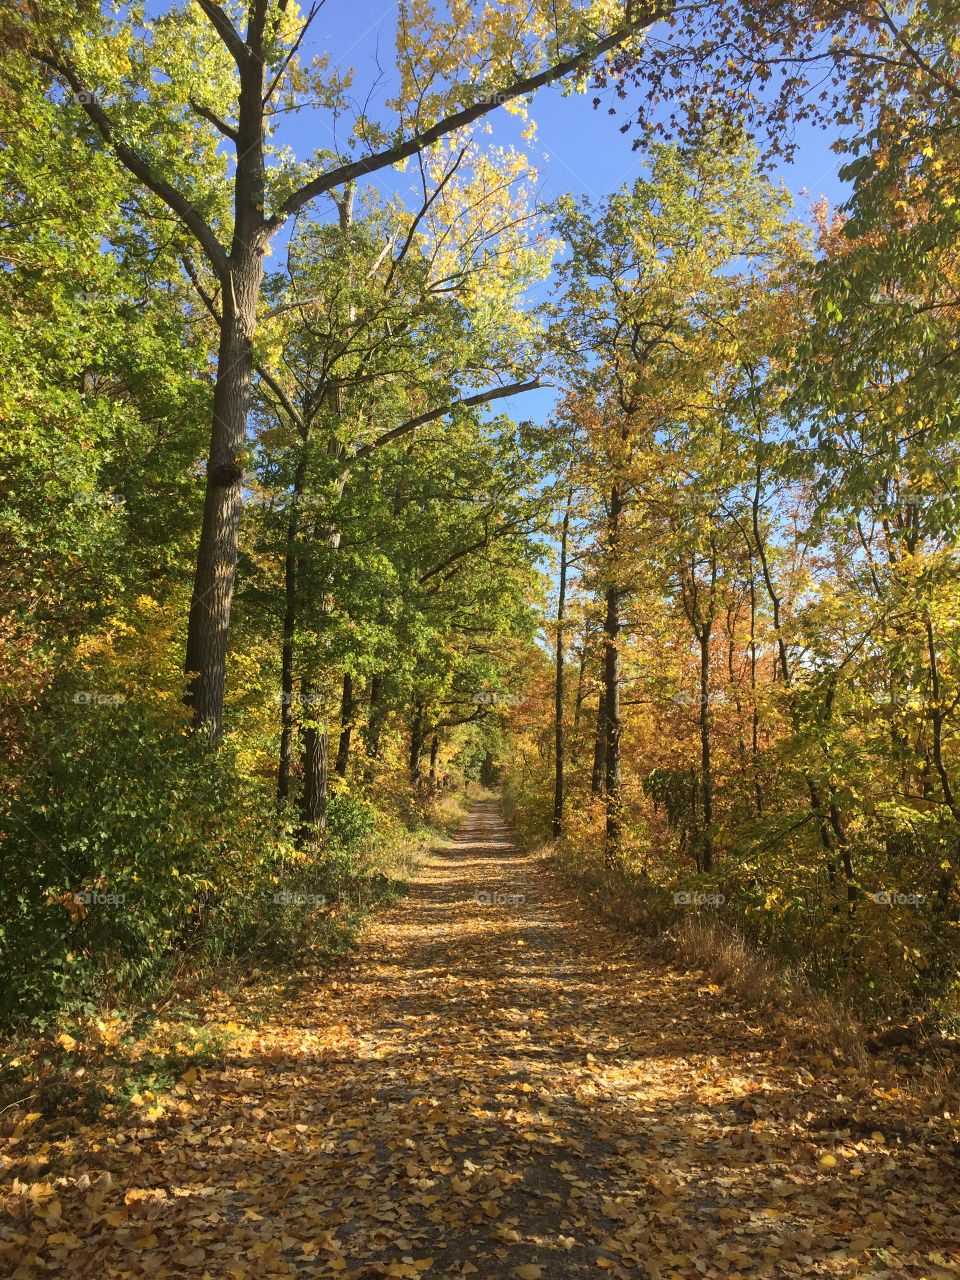 Spätsommer im Oktober. bunt, herbstlich, ein wunderschöner Spaziergang im Wald.